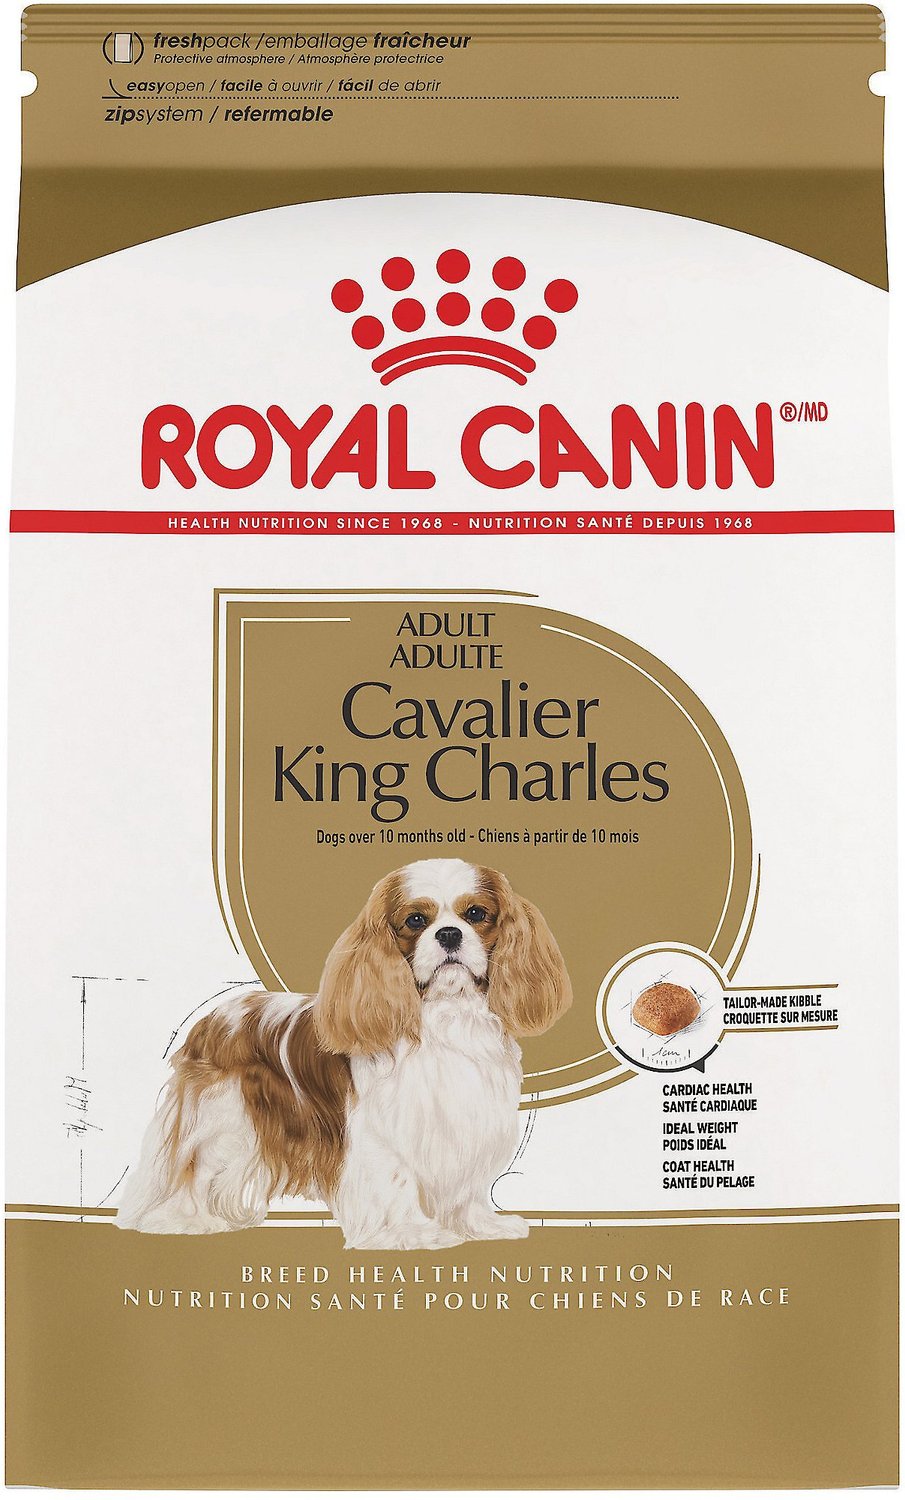 cavalier king charles diet